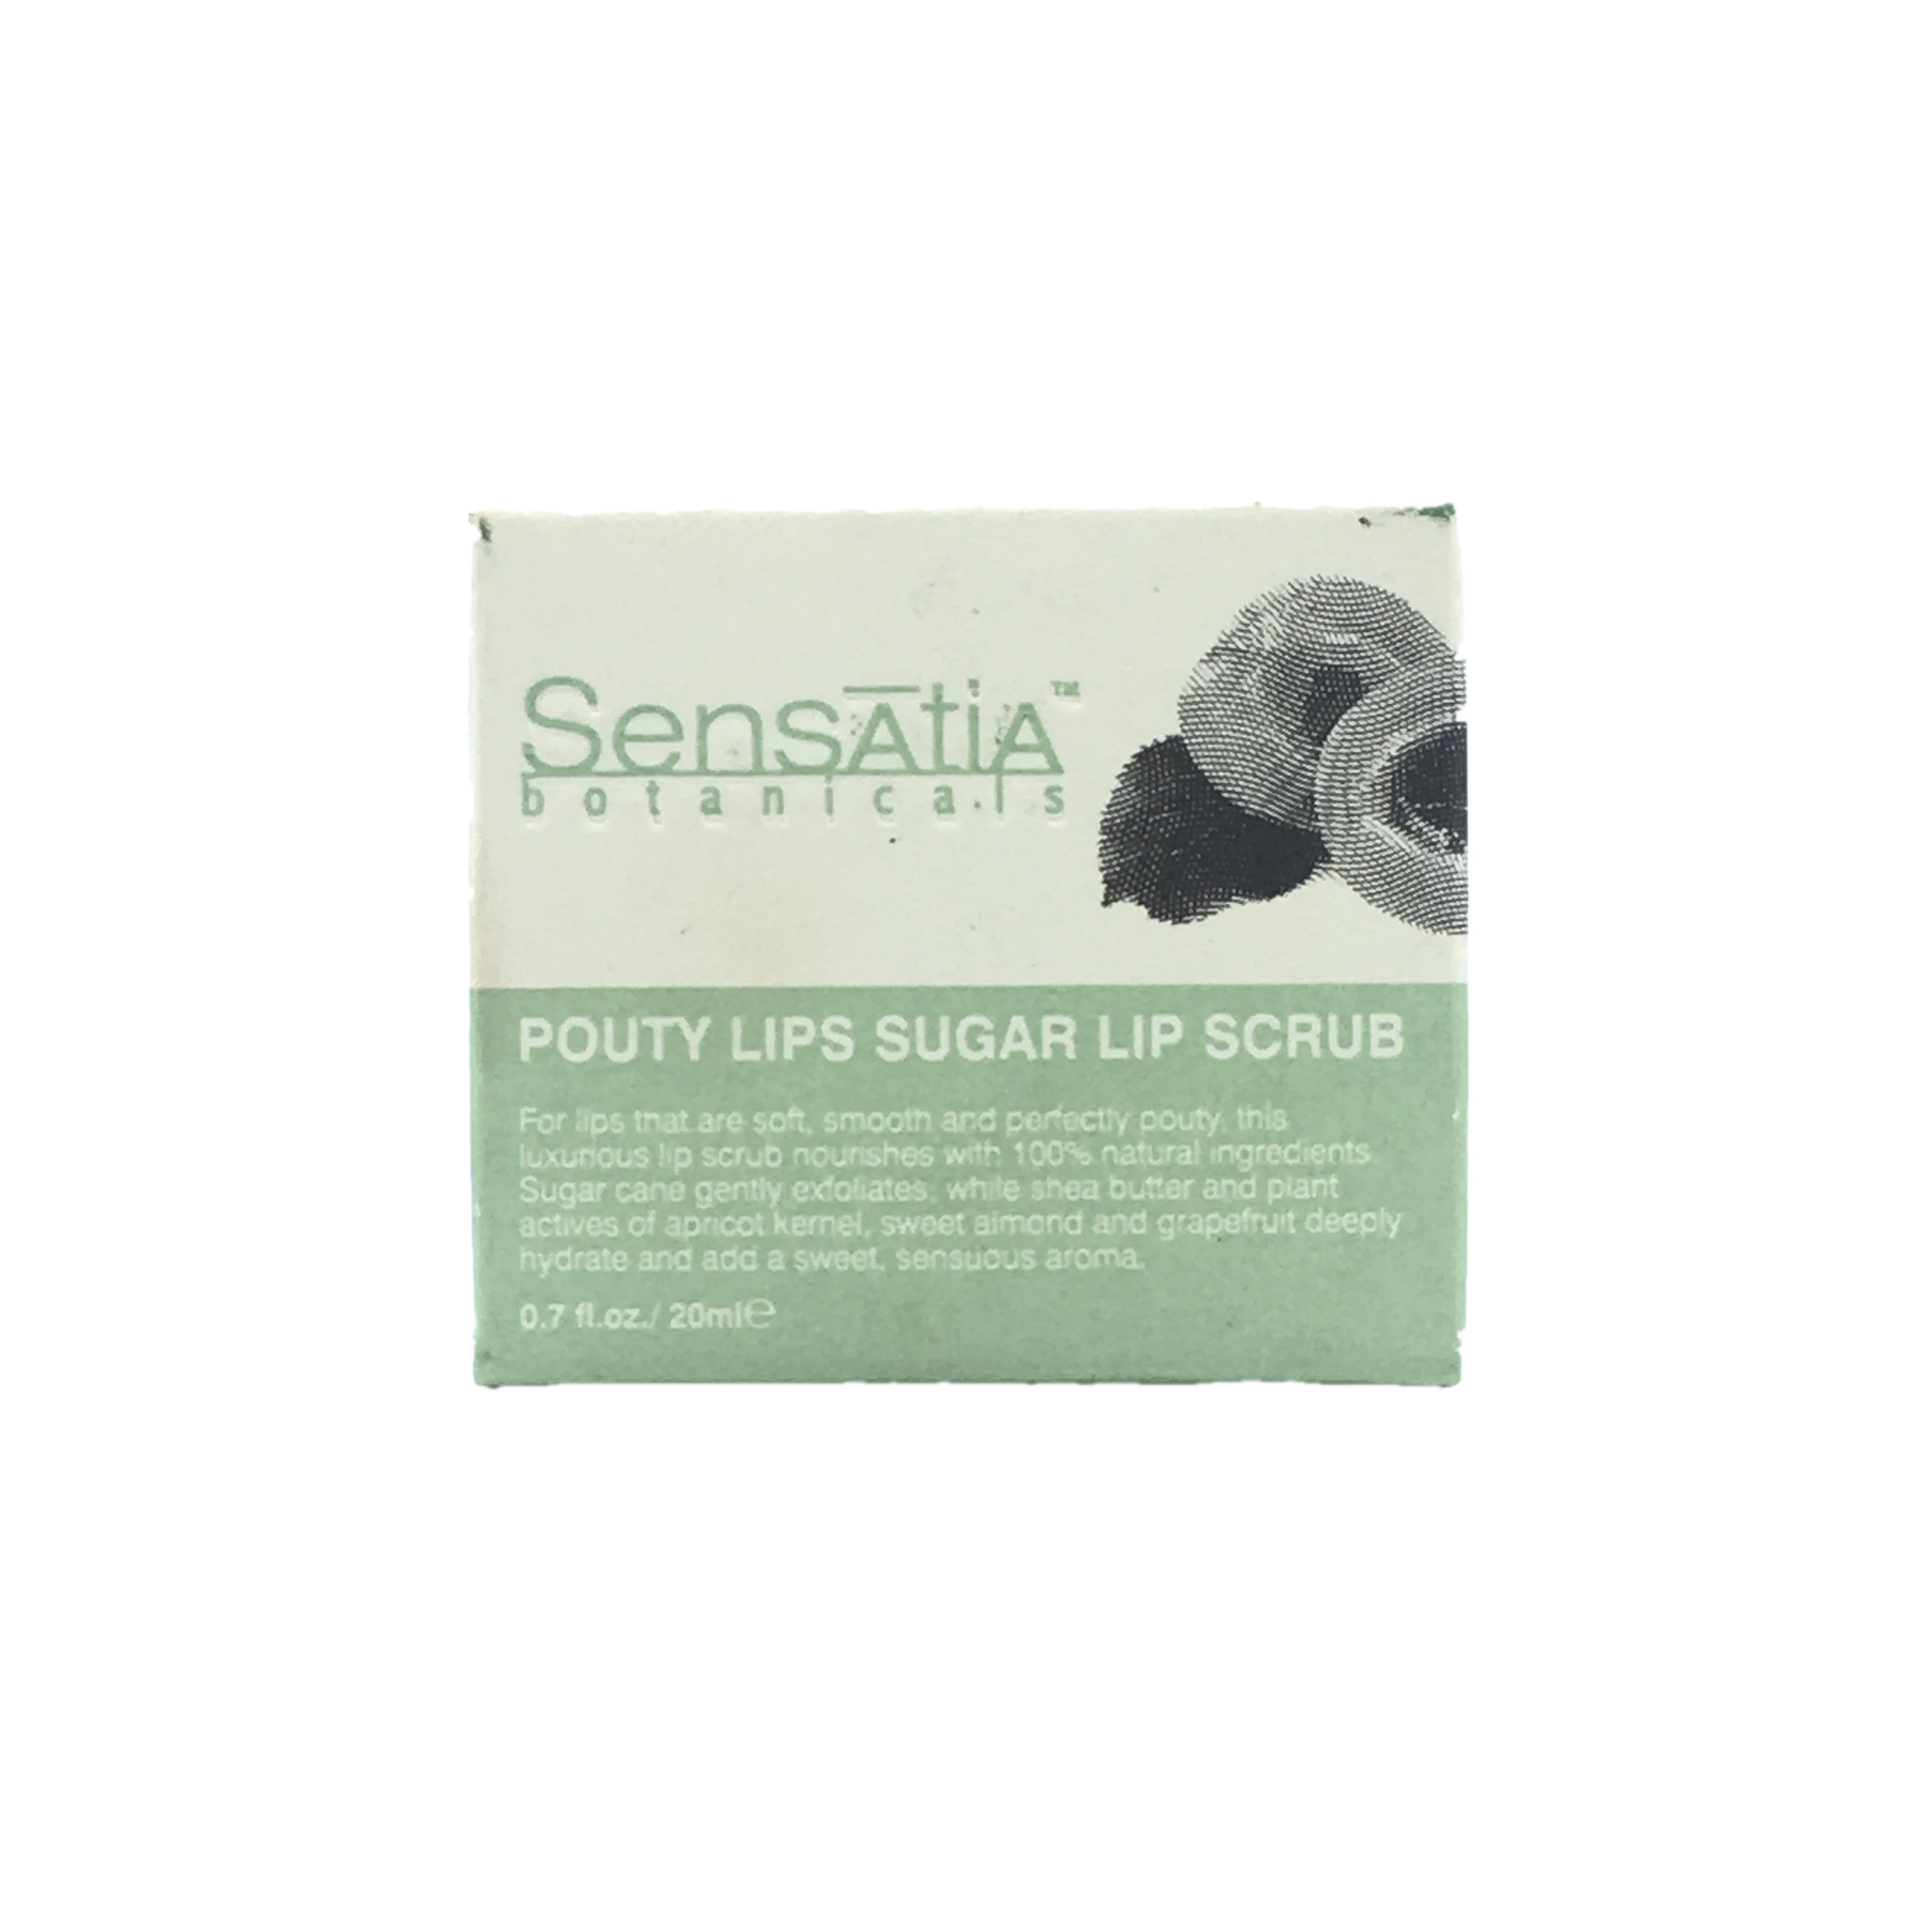 Sensatia Botanicals Pouty Lips Sugar Lip Scrub Lips